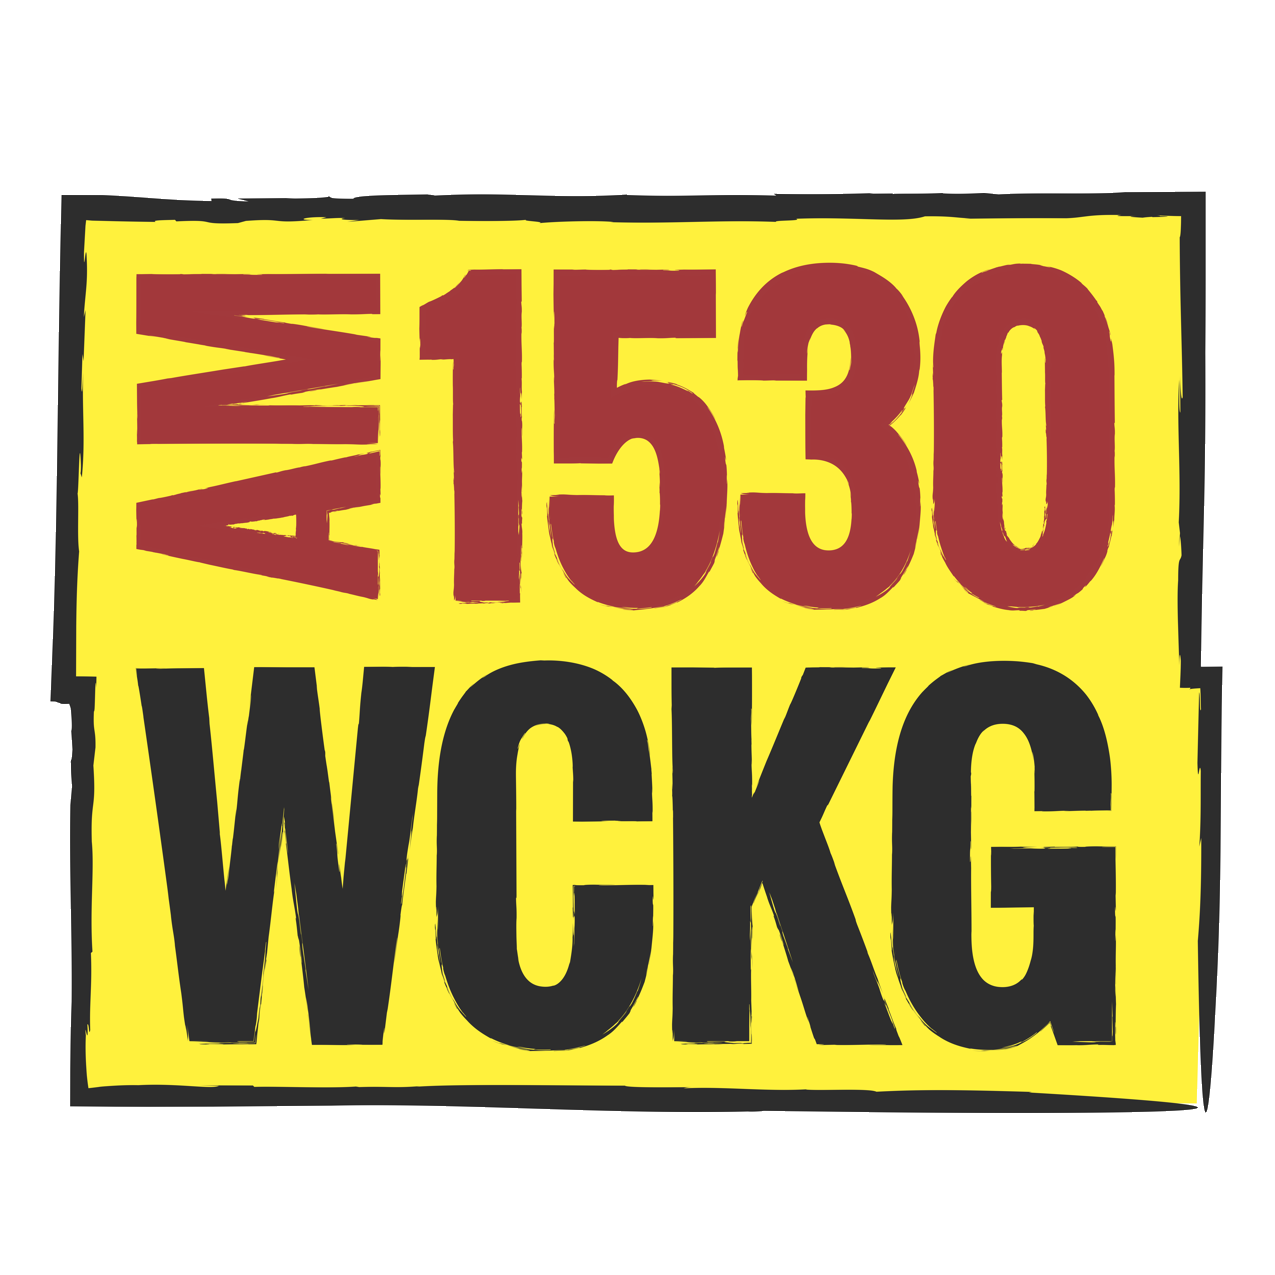 WCKG Chicago 1530 AM logo square